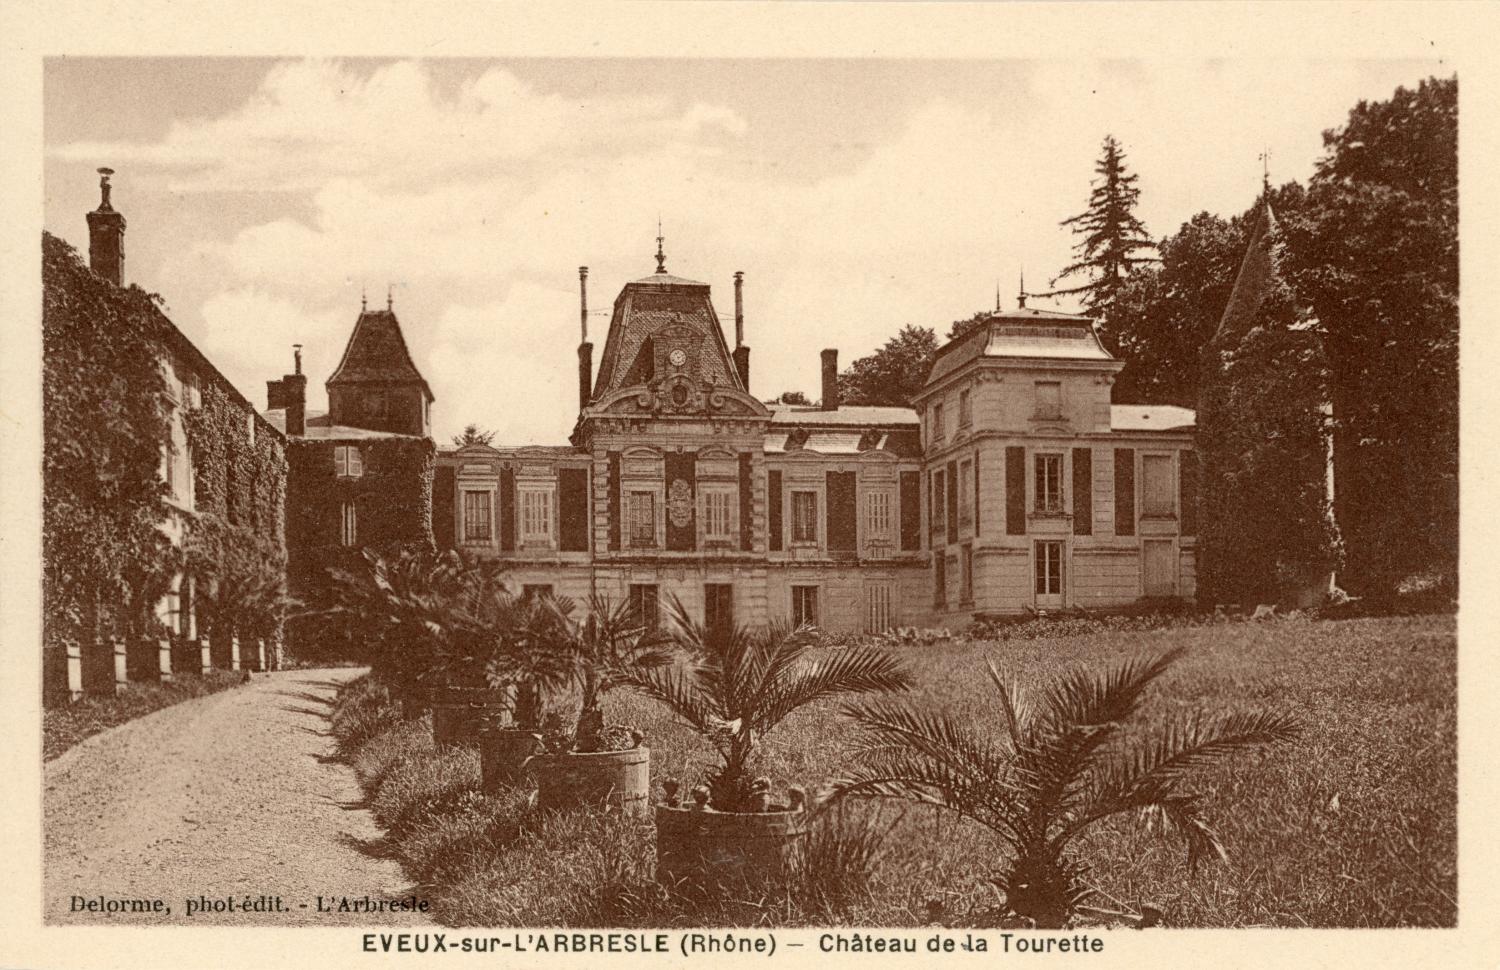 Eveux-sur-L'Arbresle (Rhône). - Château de la Tourette